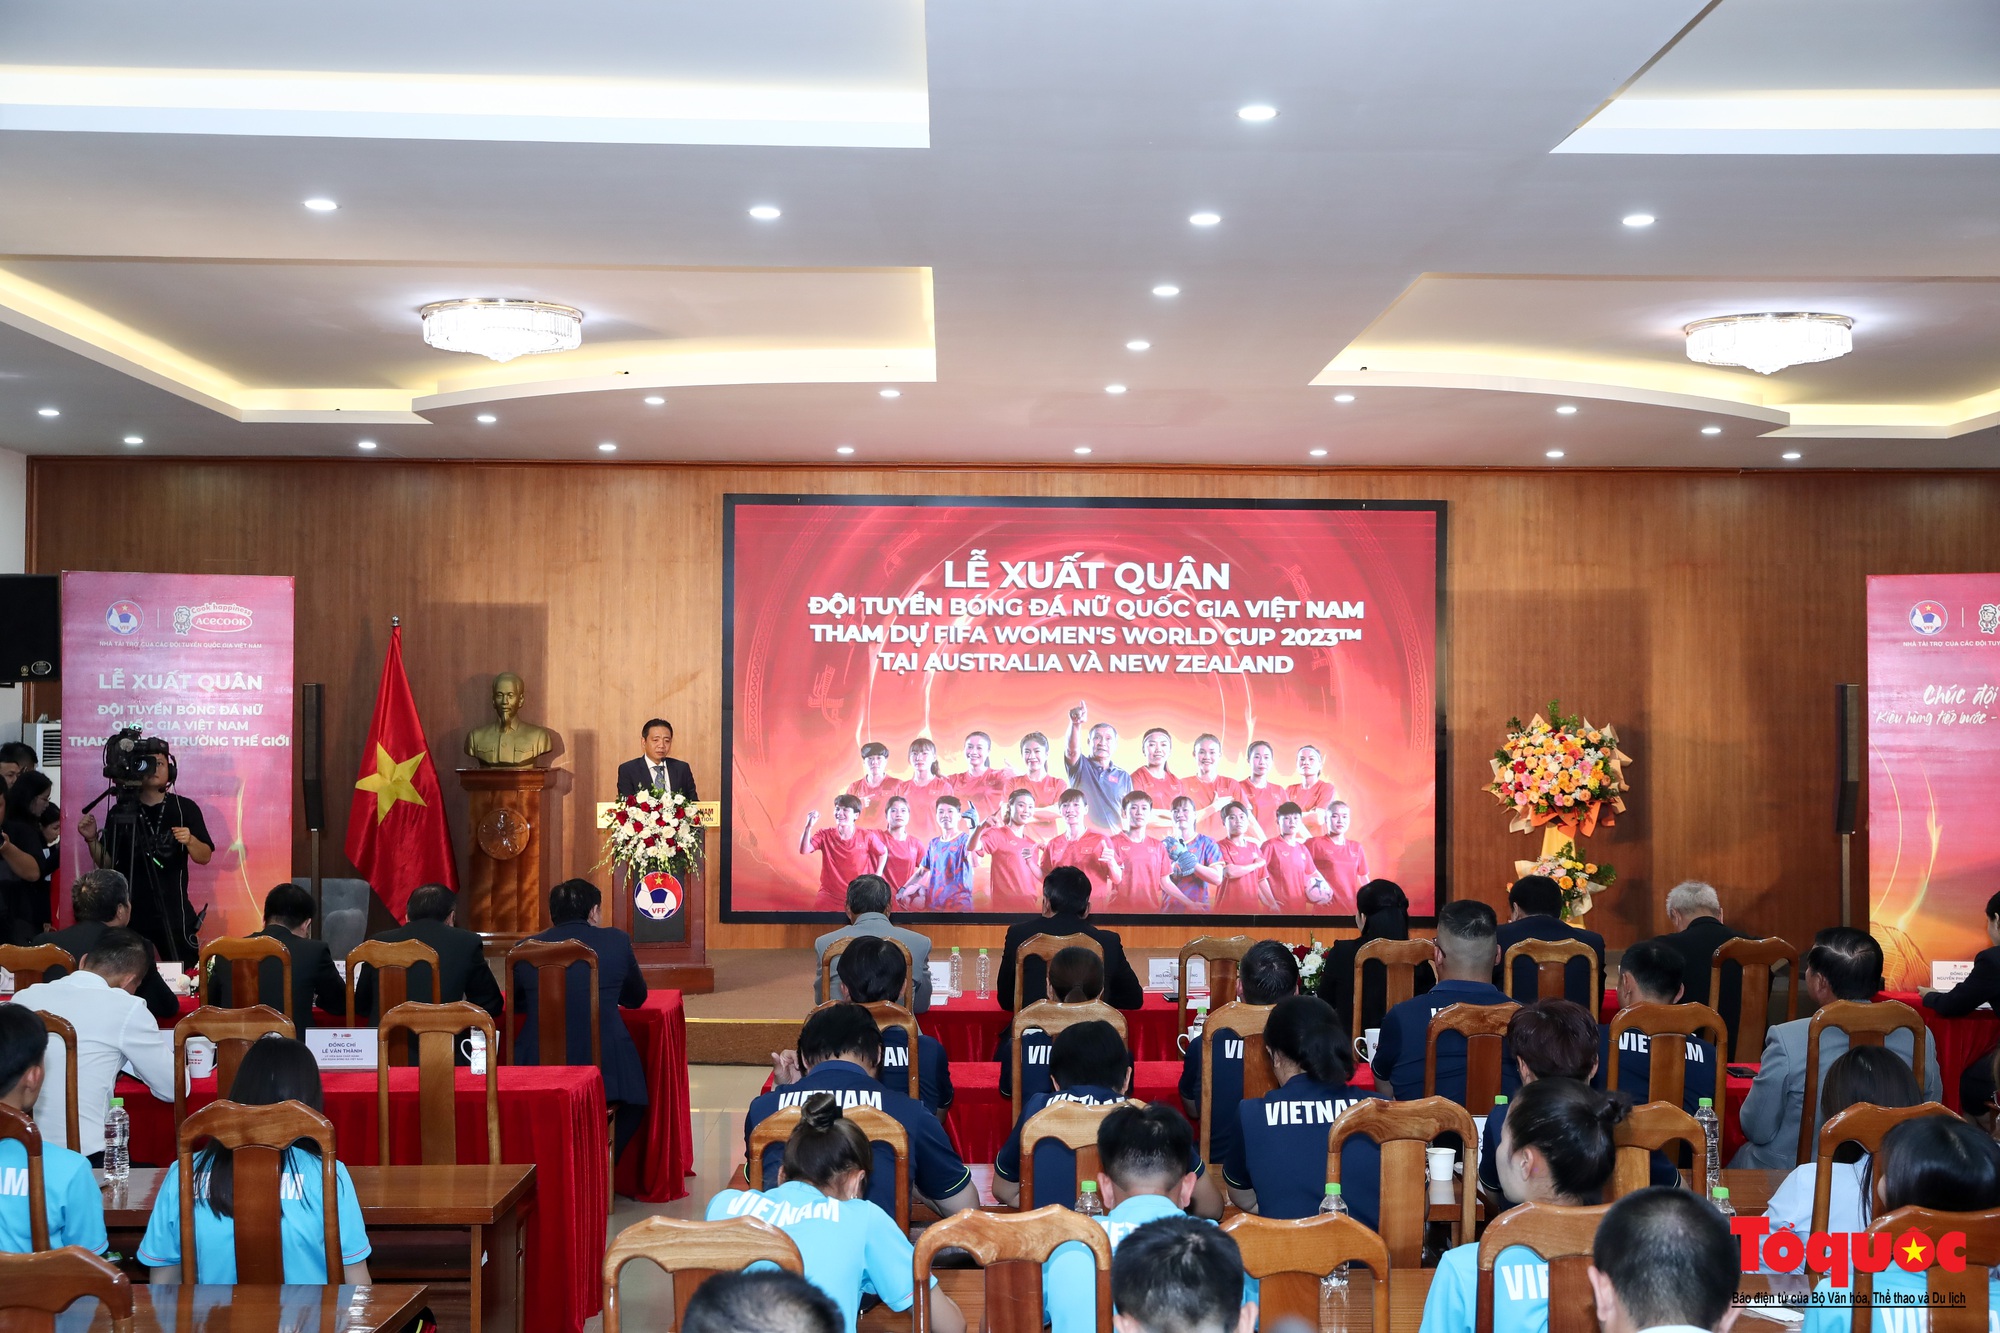 Tuyển nữ Việt Nam nhận tài trợ khủng tại lễ xuất quân dự World Cup 2023 - Ảnh 9.